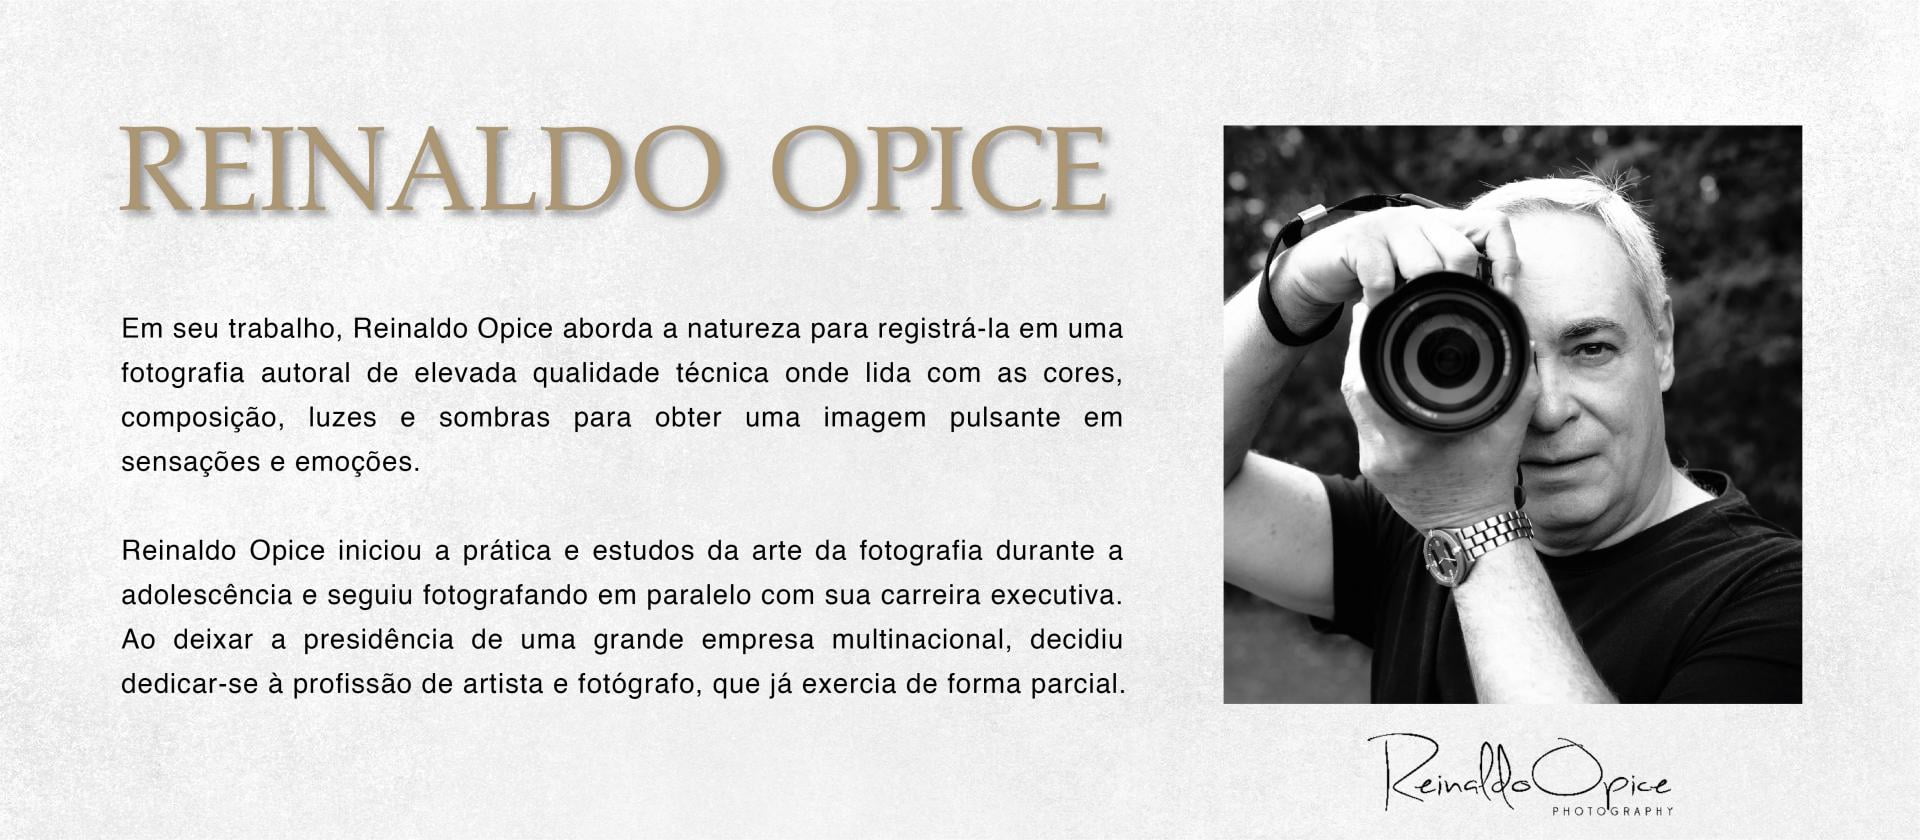 Reinaldo Opice